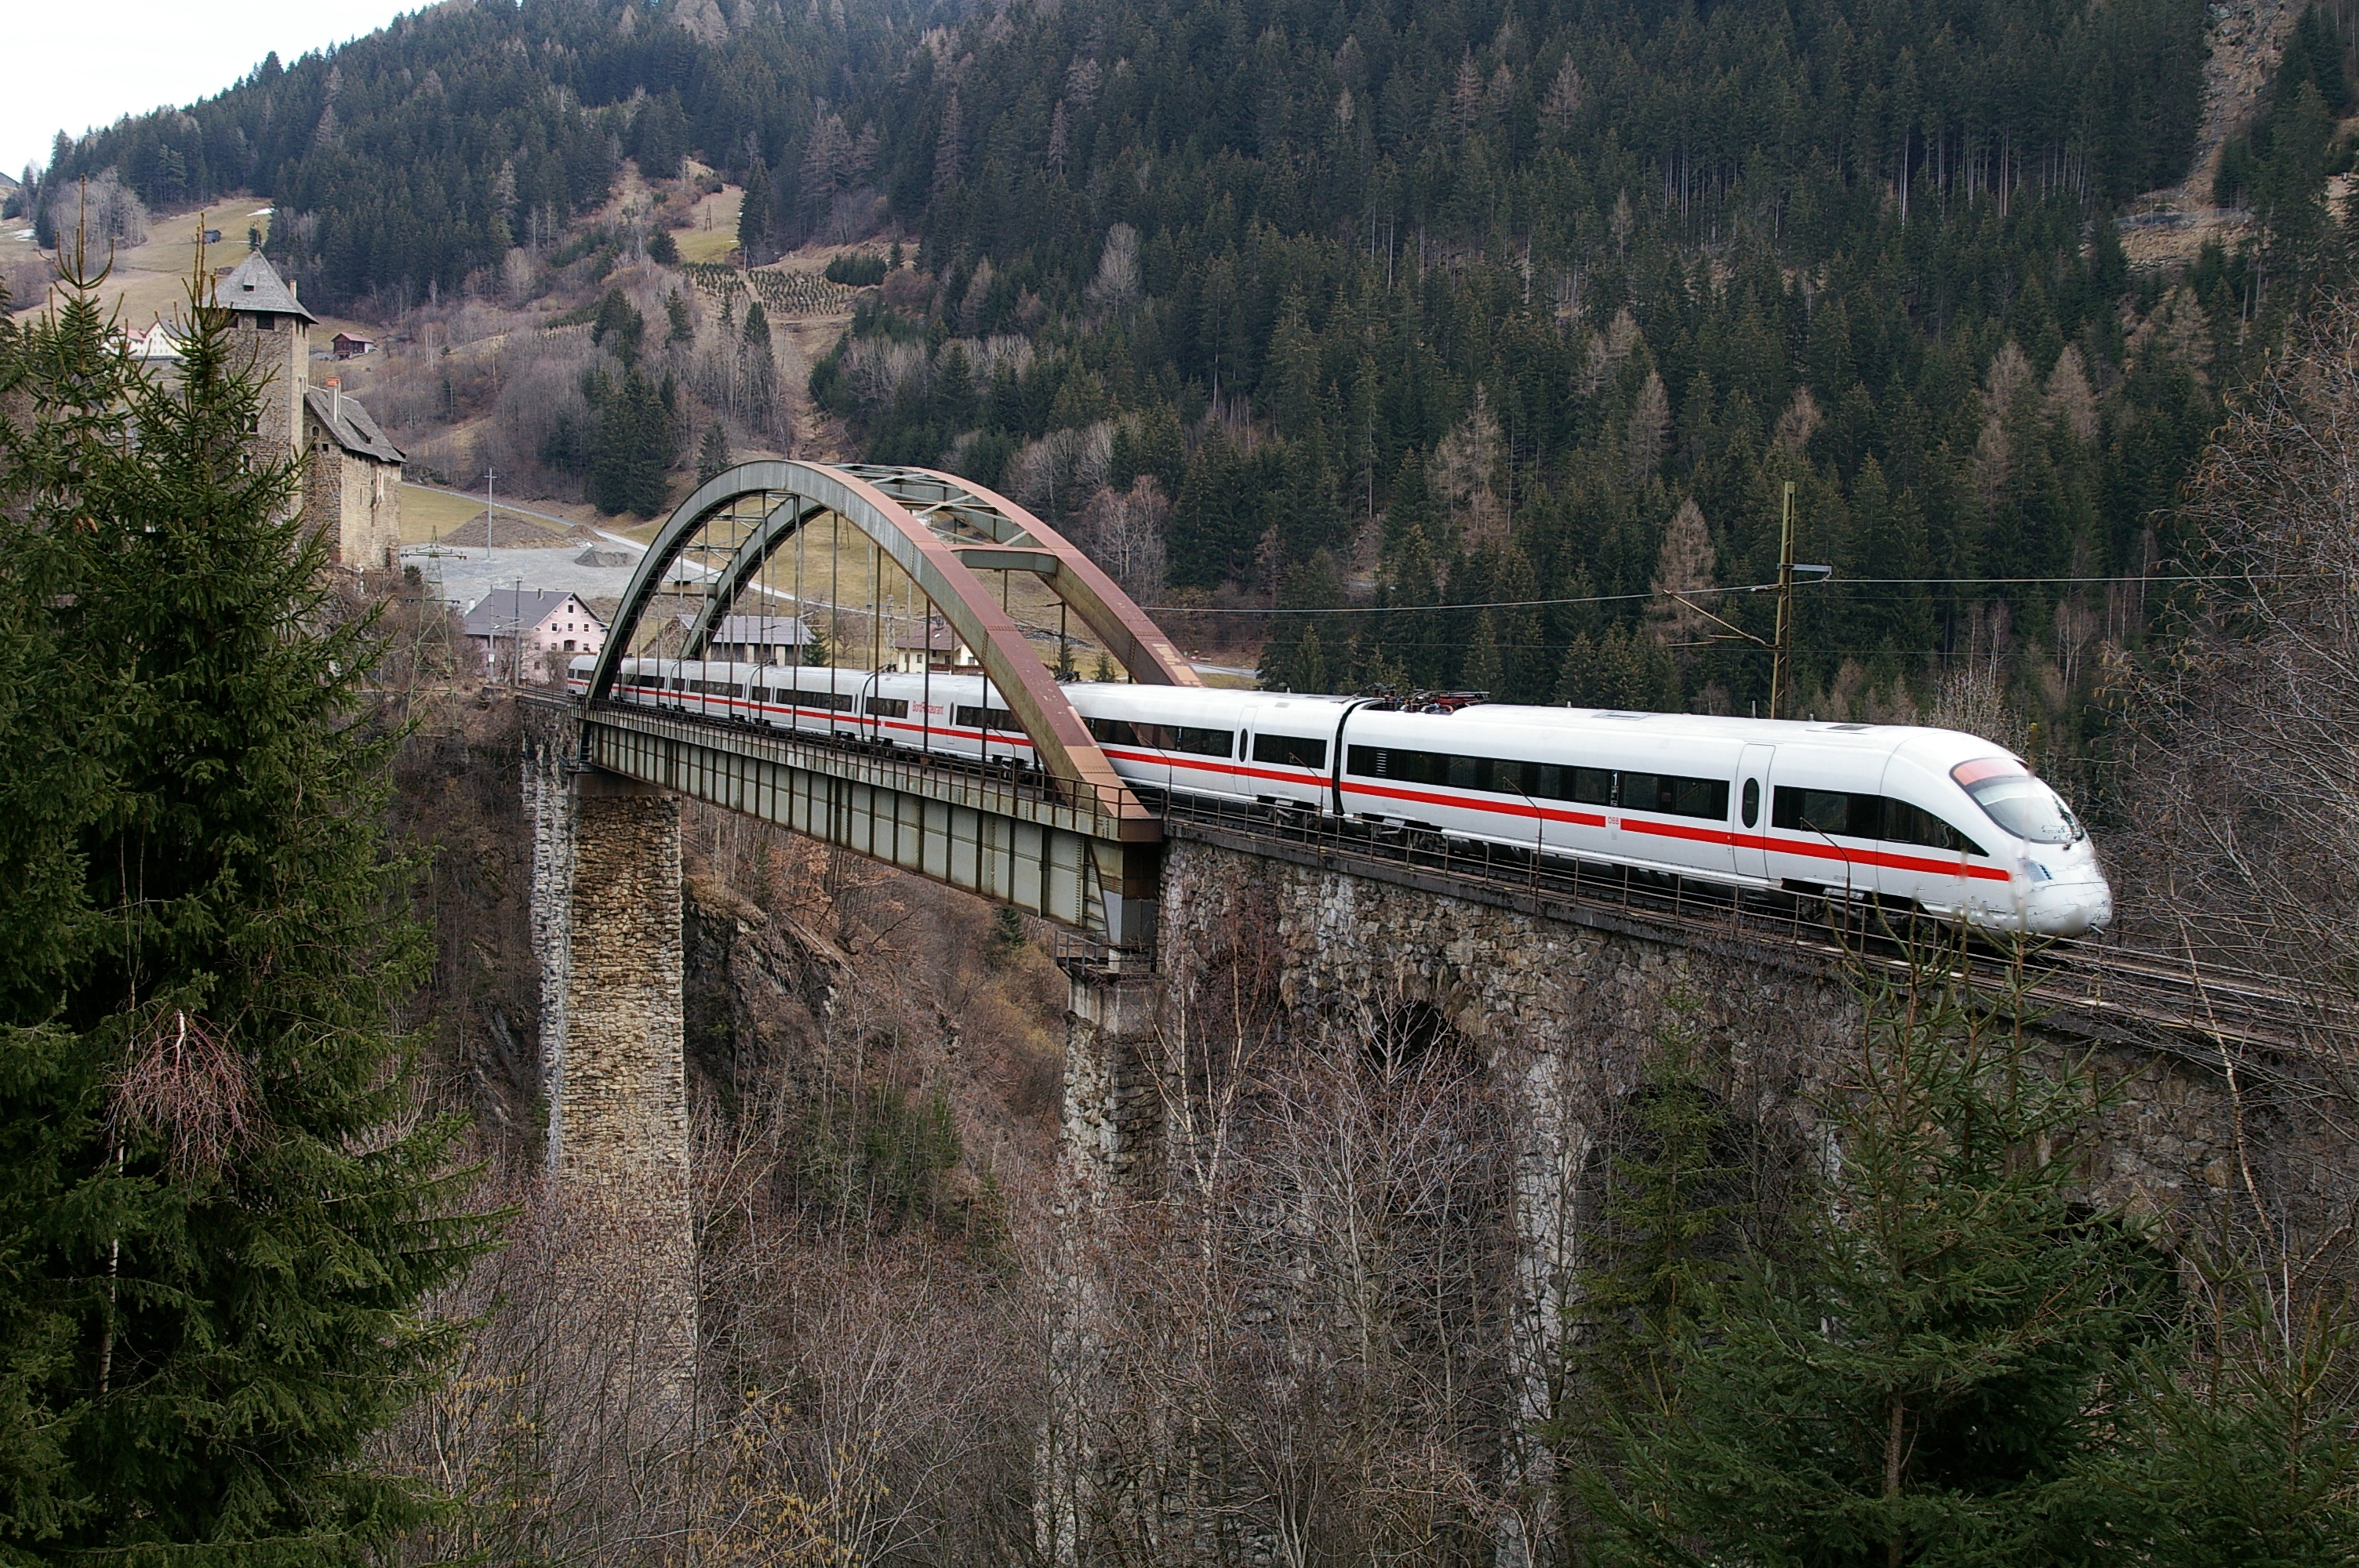 First railway. Австрийские федеральные железные дороги. ЖД Австрии. Железнодорожная сеть Австрии. Железнодорожный транспорт.